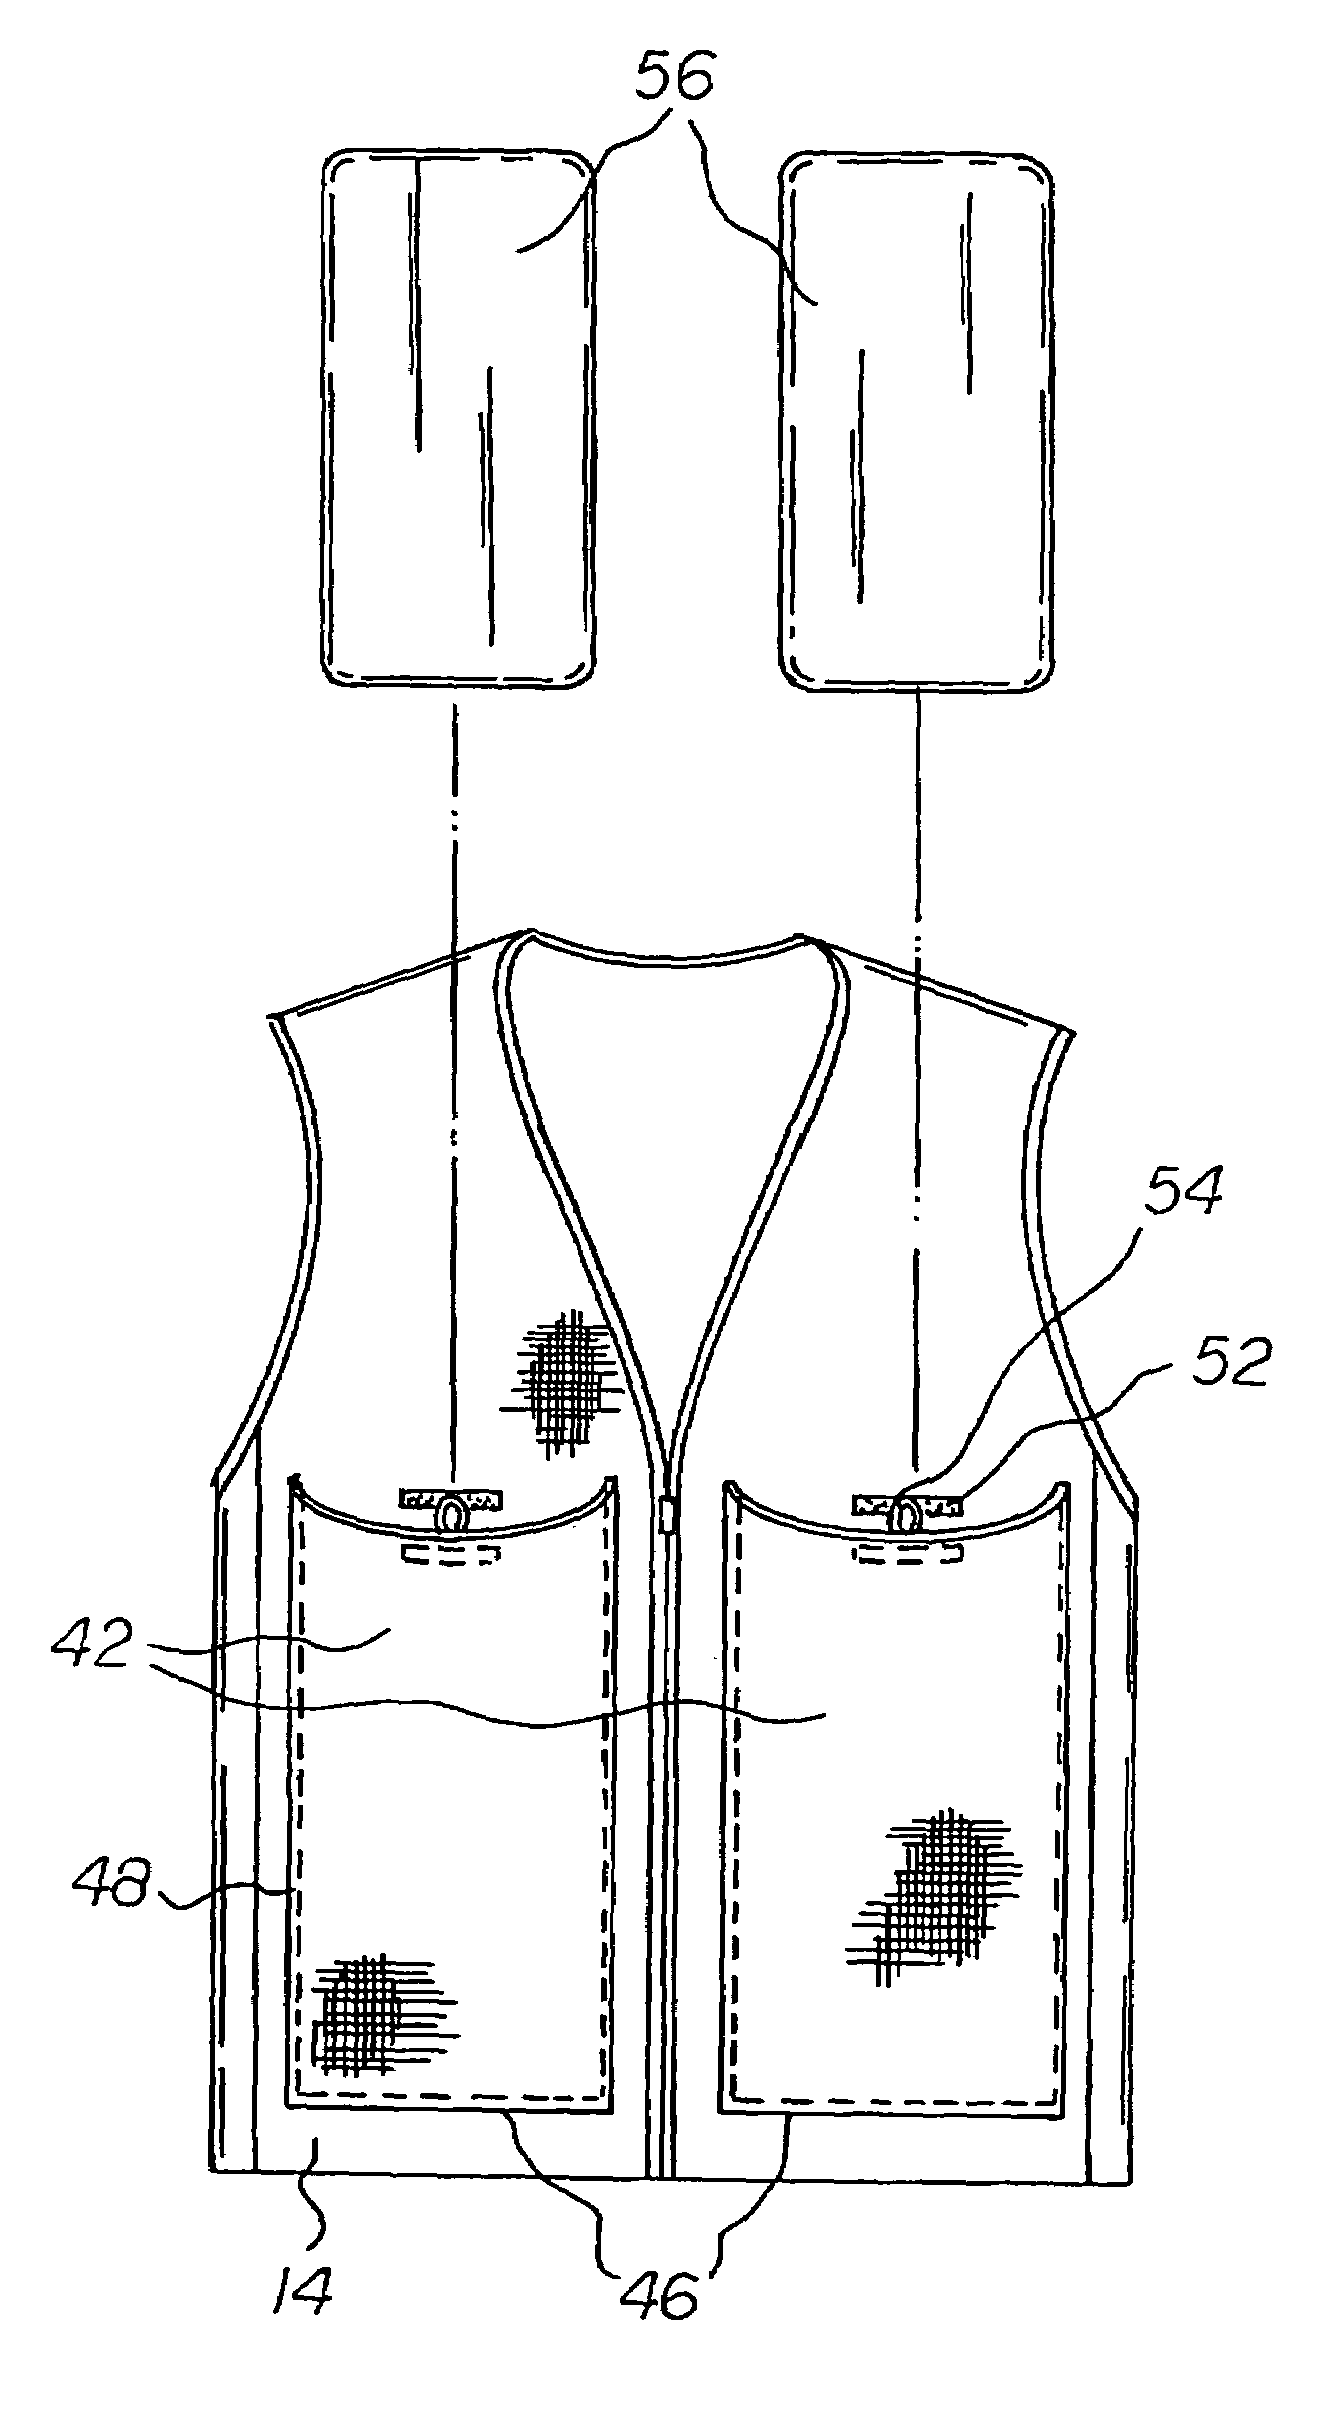 Cooling vest system